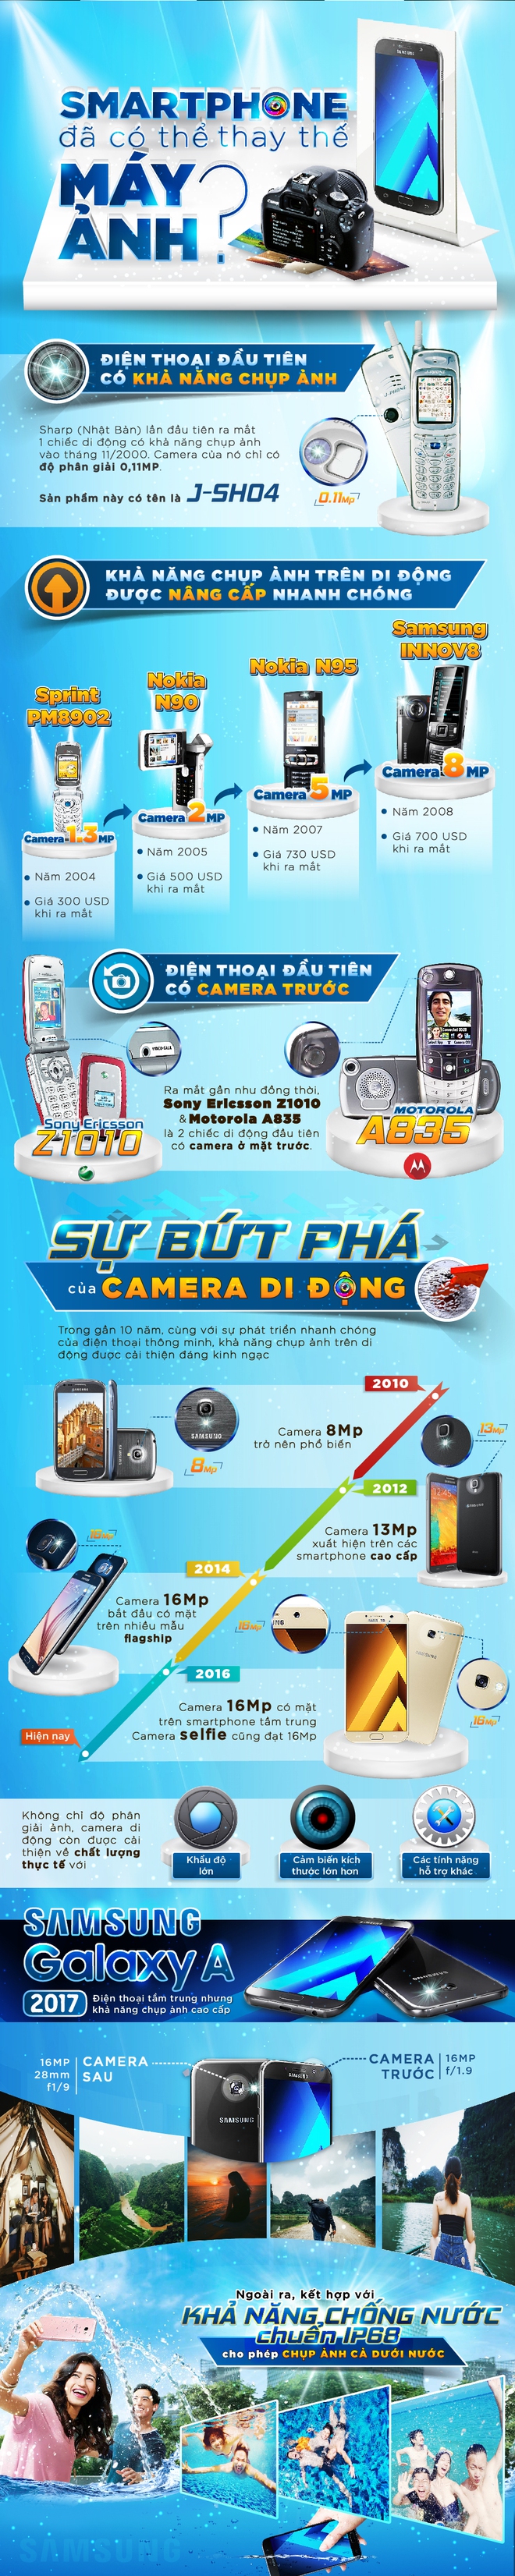 [Infographic] Smartphone đã có thể thay thế máy ảnh như thế nào? - Ảnh 1.